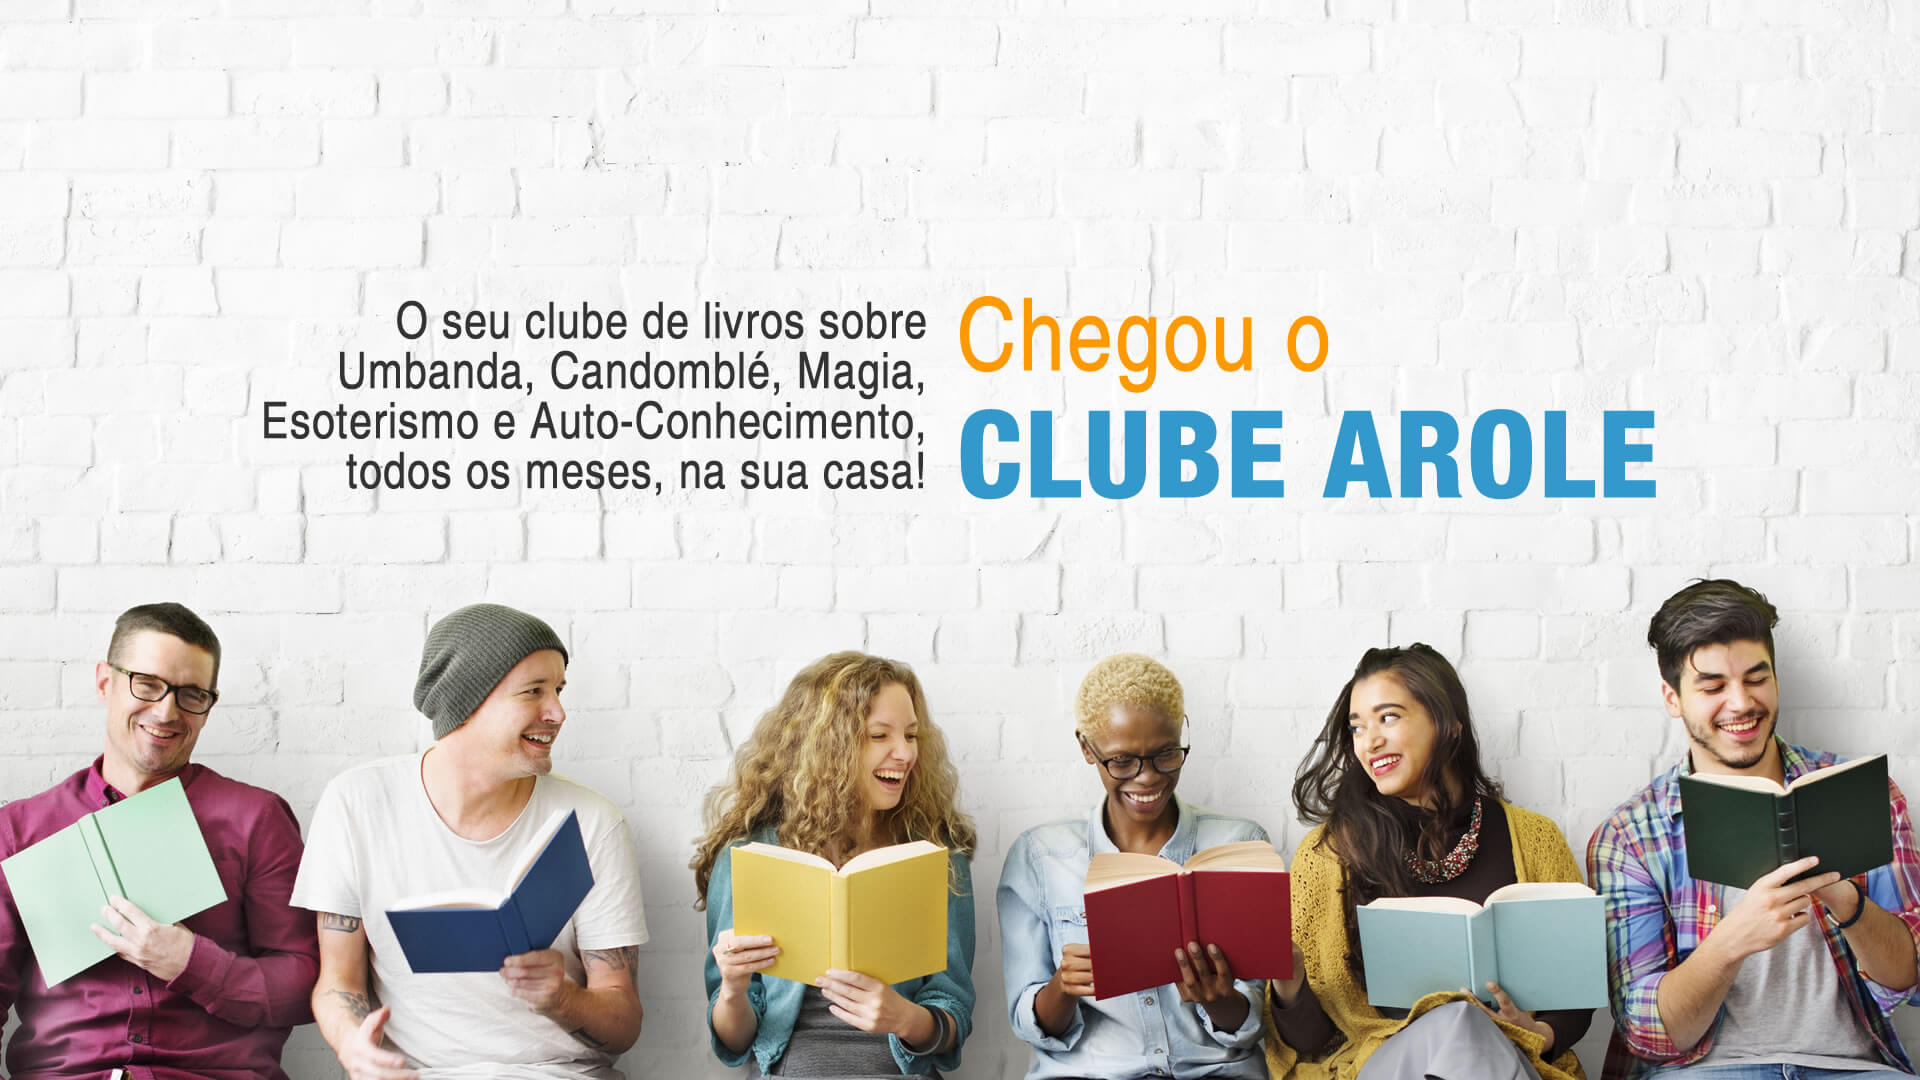 Diego de Oxóssi | O Clube Arole, lançado no último 30 de abril, reunirá obras da Editora e outras publicações do segmento selecionadas por autores e curadores